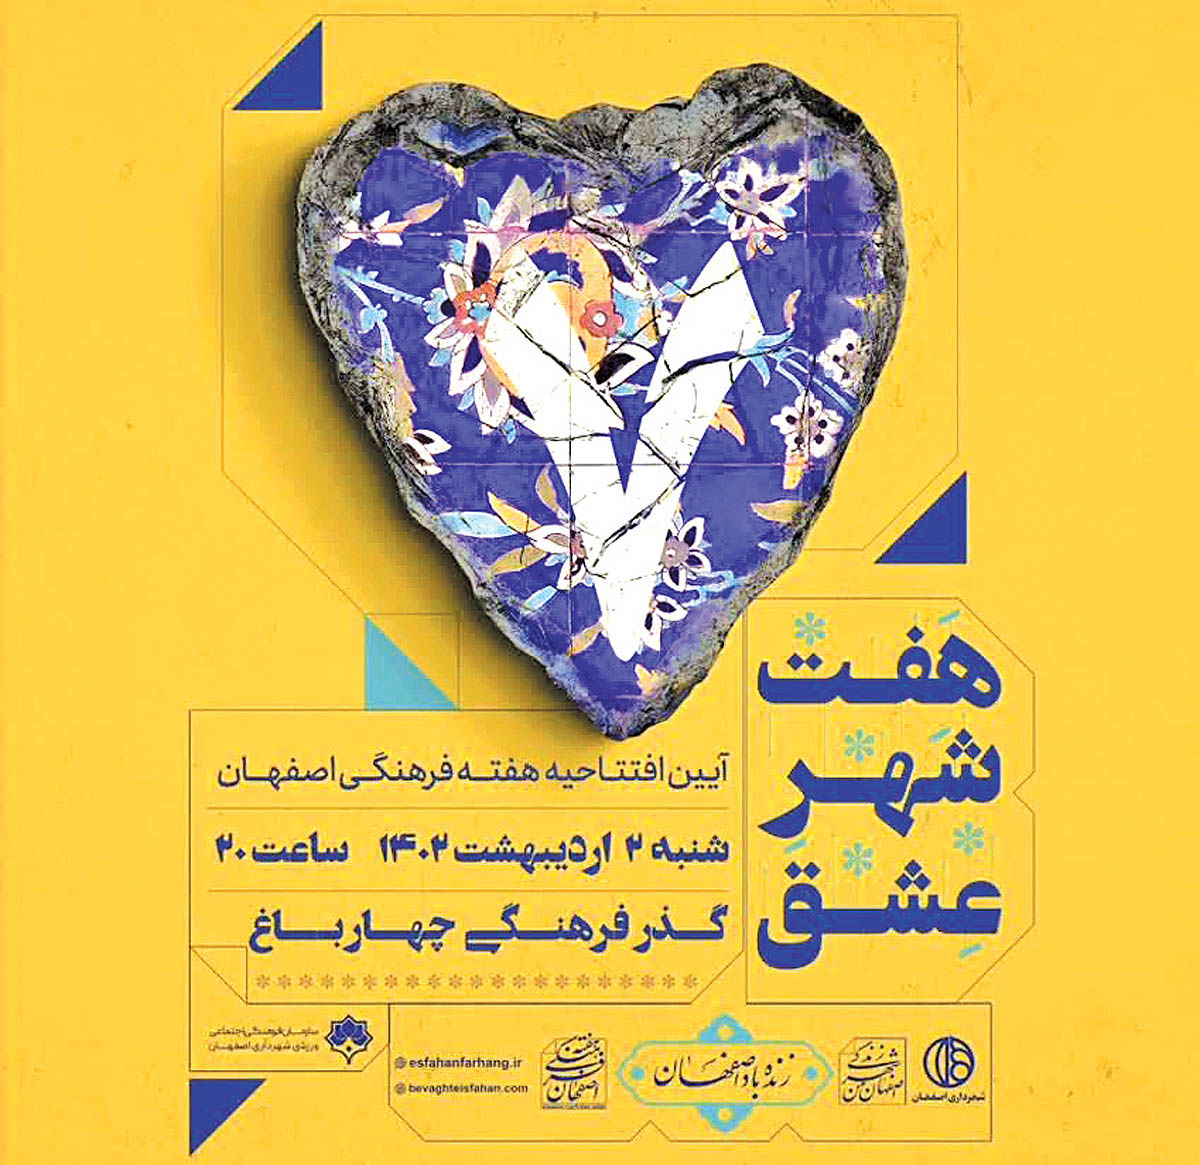 «هفت شهر عشق» اقدام هنری برای آشنایی با مفاخر اصفهان